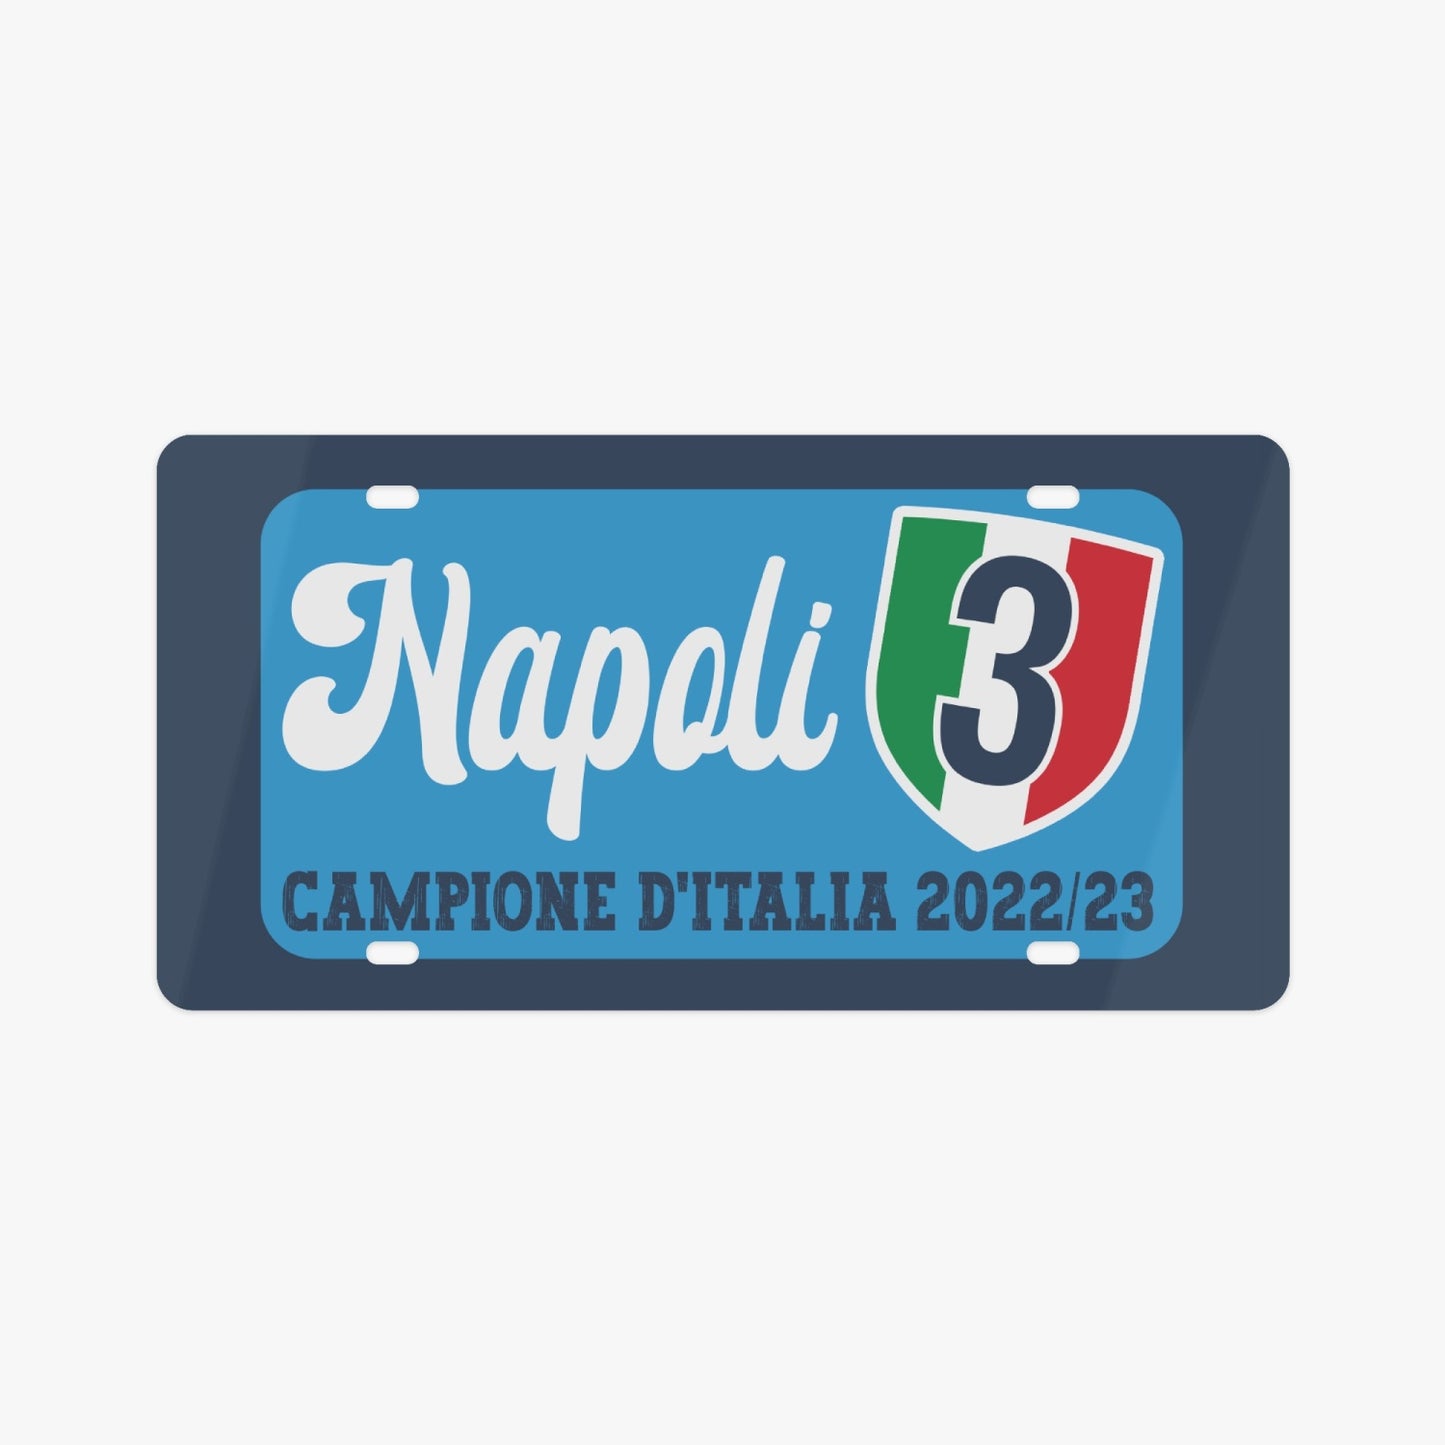 Napoli Campione 22/33 - License Plate